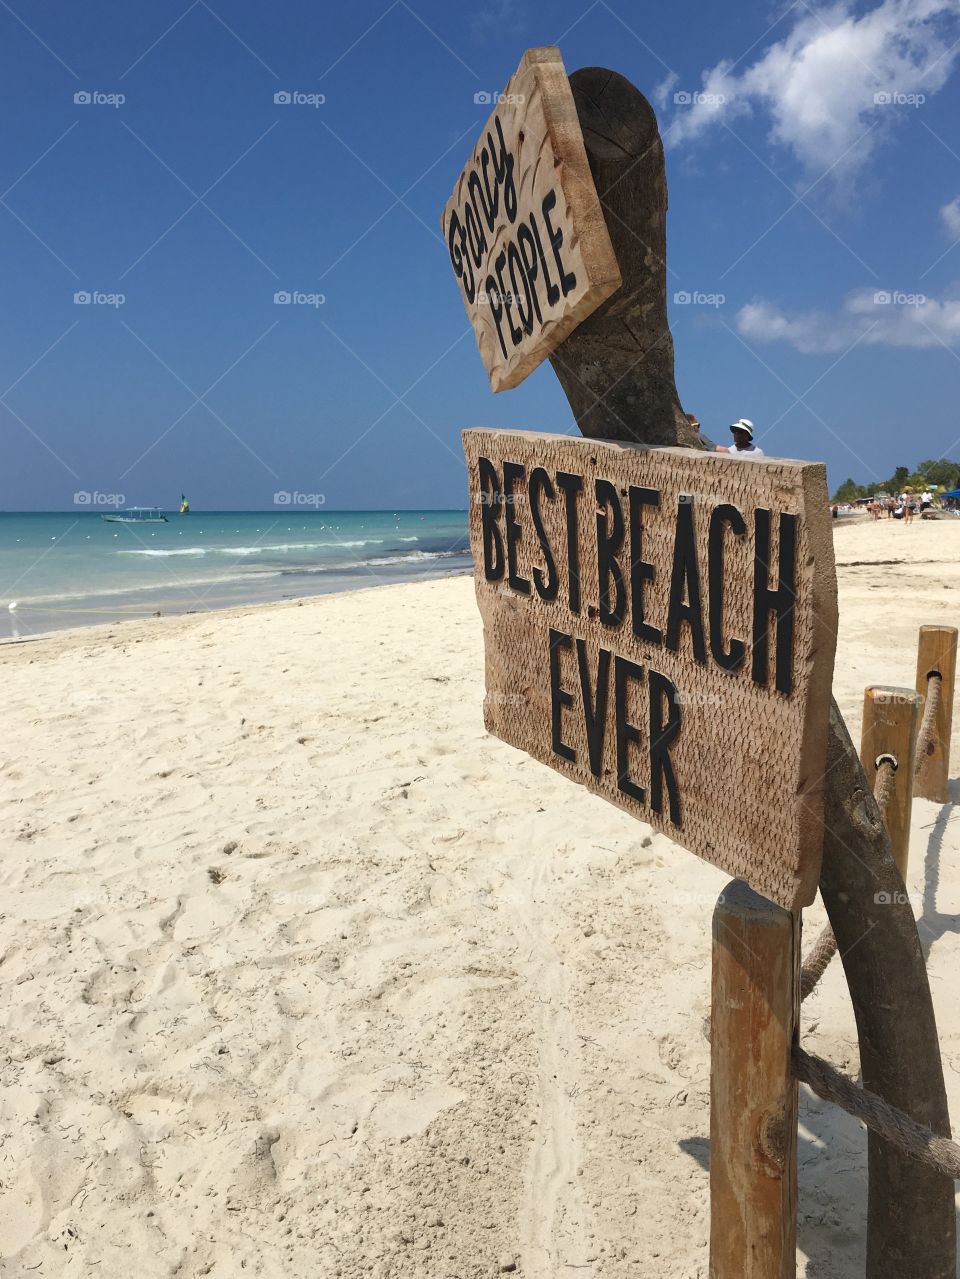 7 miles Beach of JAMAICA 